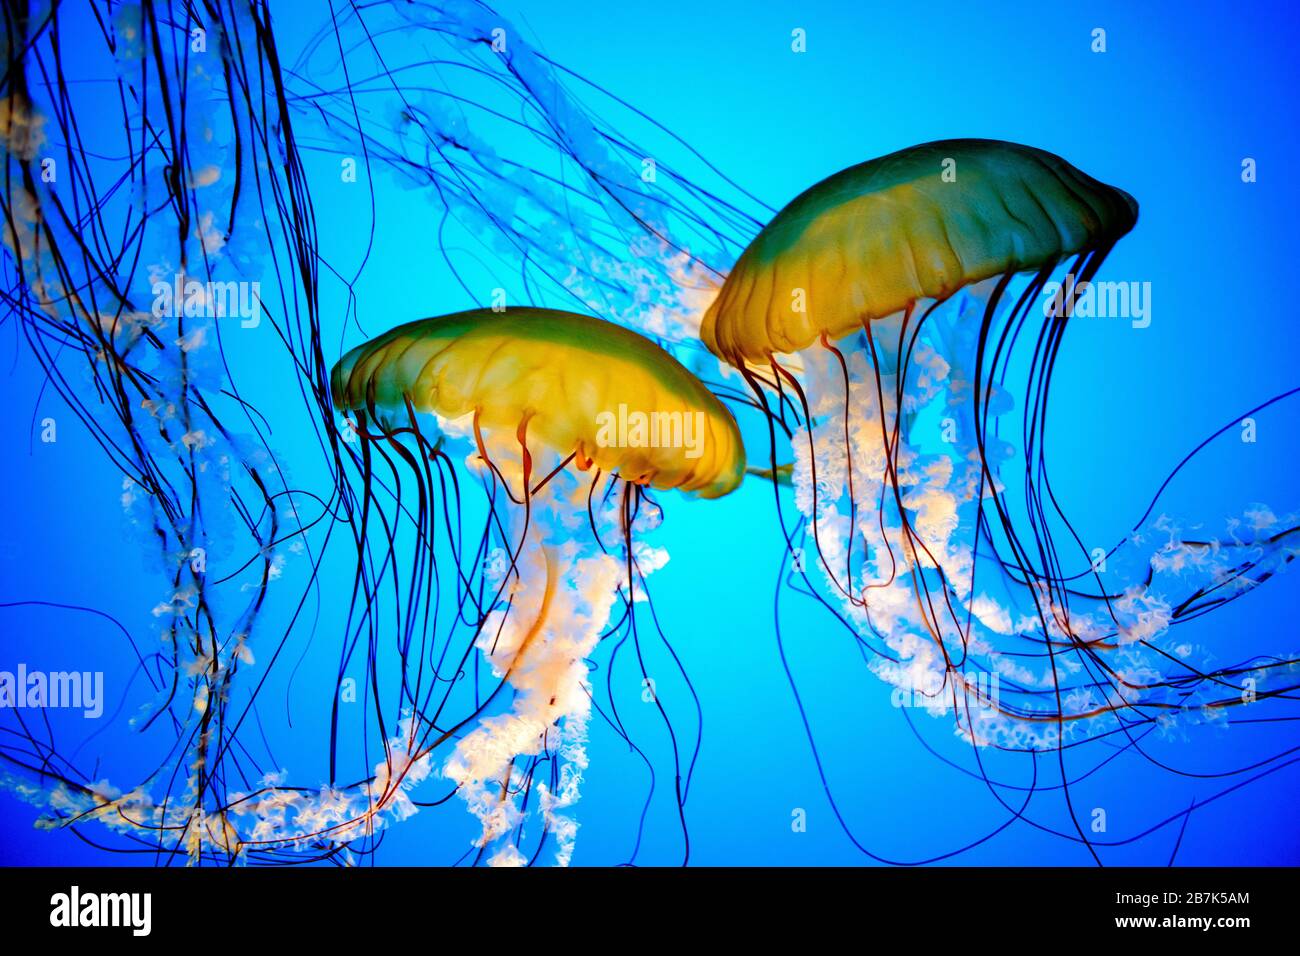 BALTIMORE, Maryland – Nahaufnahme von Quallen, die vor einem hellblauen Hintergrund schwimmen, mit Hintergrundbeleuchtung, die hilft, durch die Quallen zu sehen. Aufgenommen im Baltimore Aquarium in Inner Harbor, Baltimore, Maryland. Stockfoto